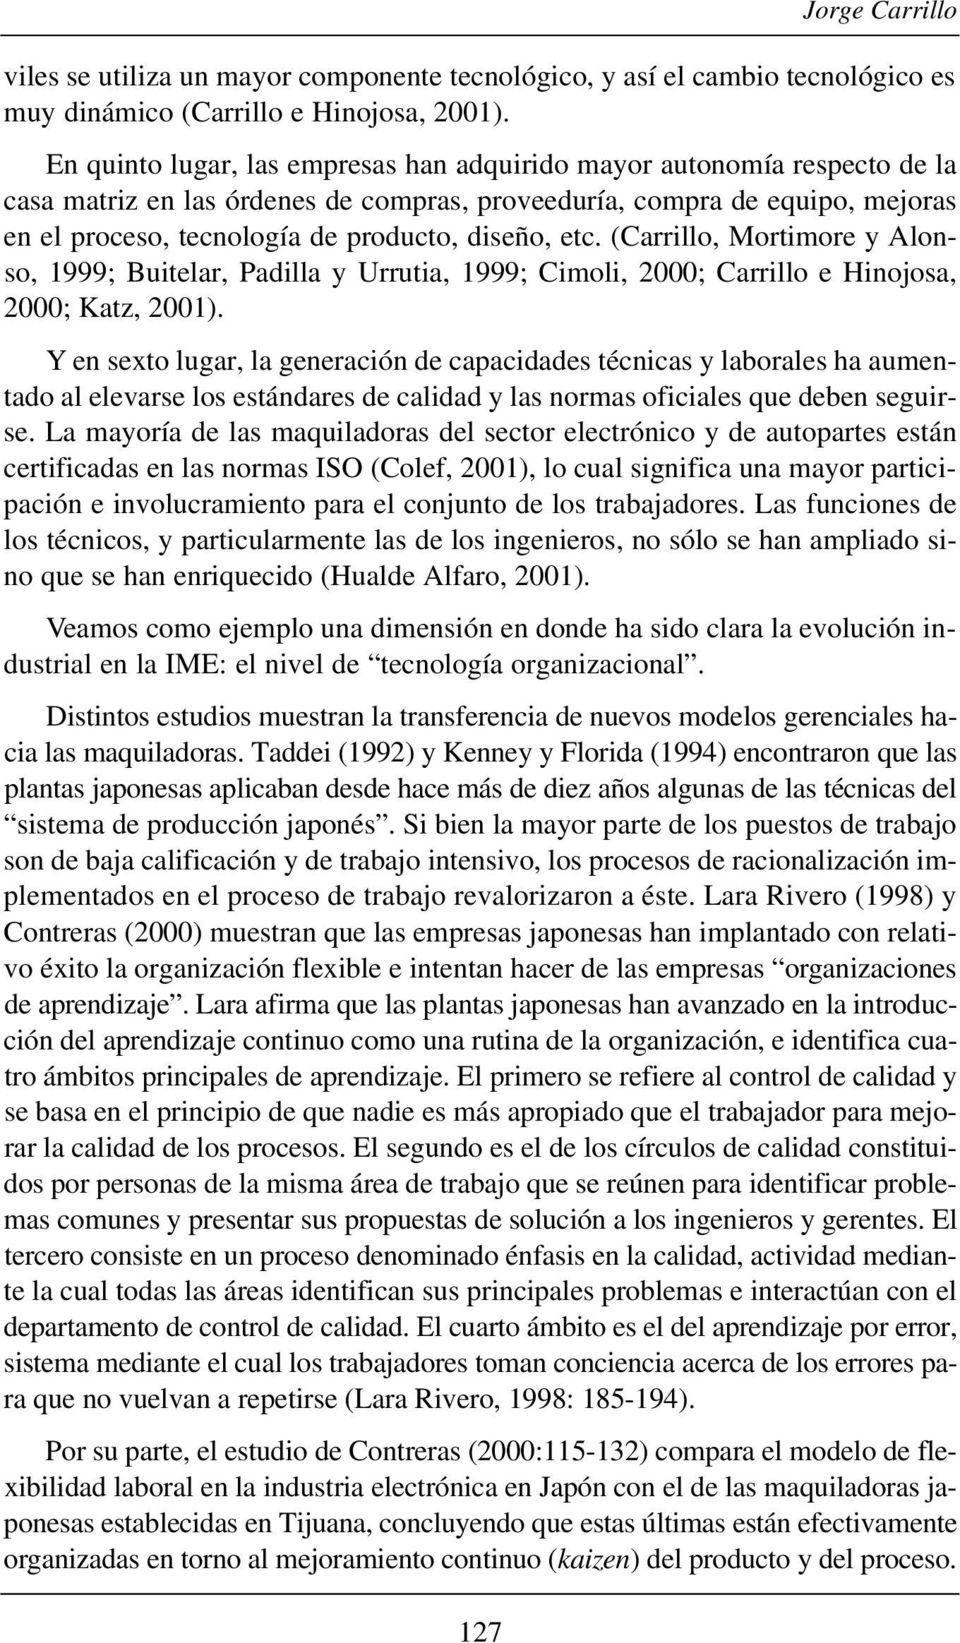 etc. (Carrillo, Mortimore y Alonso, 1999; Buitelar, Padilla y Urrutia, 1999; Cimoli, 2000; Carrillo e Hinojosa, 2000; Katz, 2001).